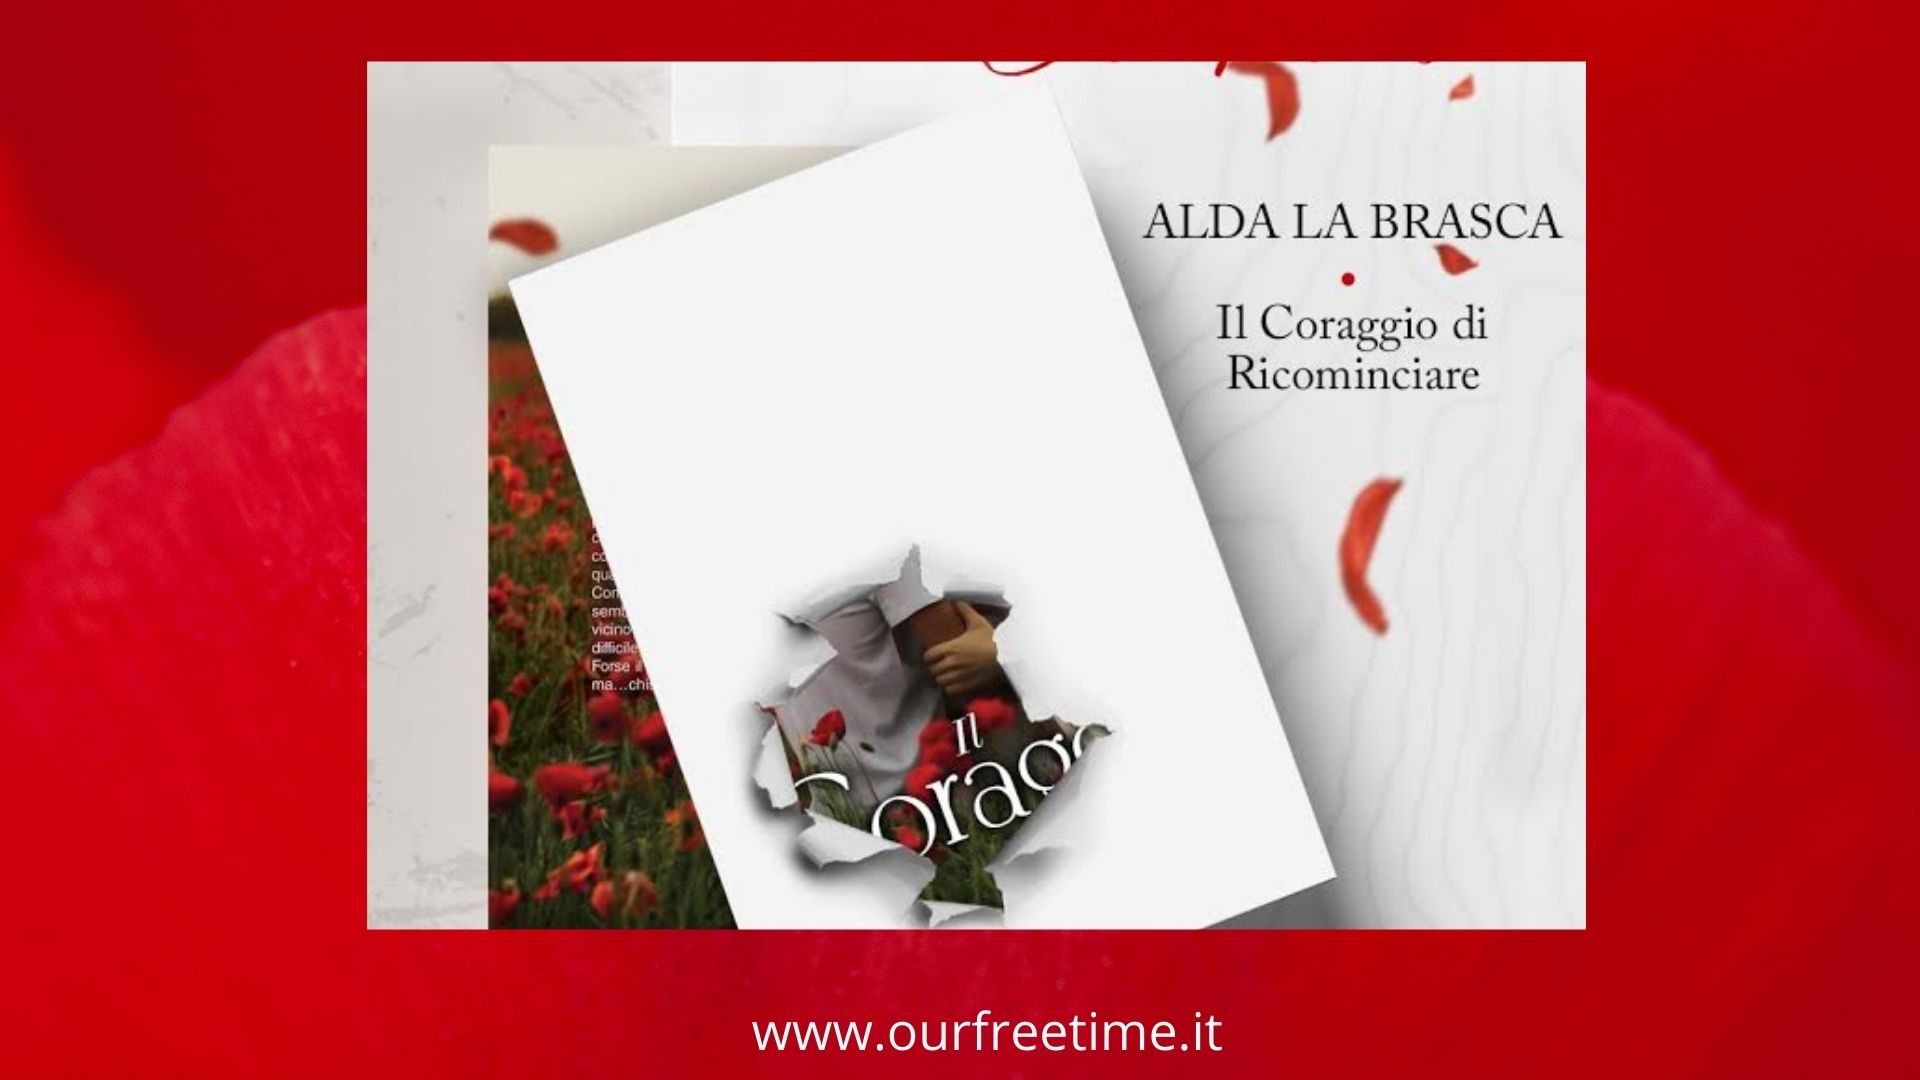 OurFreeTime Cover Reveal “Il coraggio di ricominciare” di Alda La Brusca